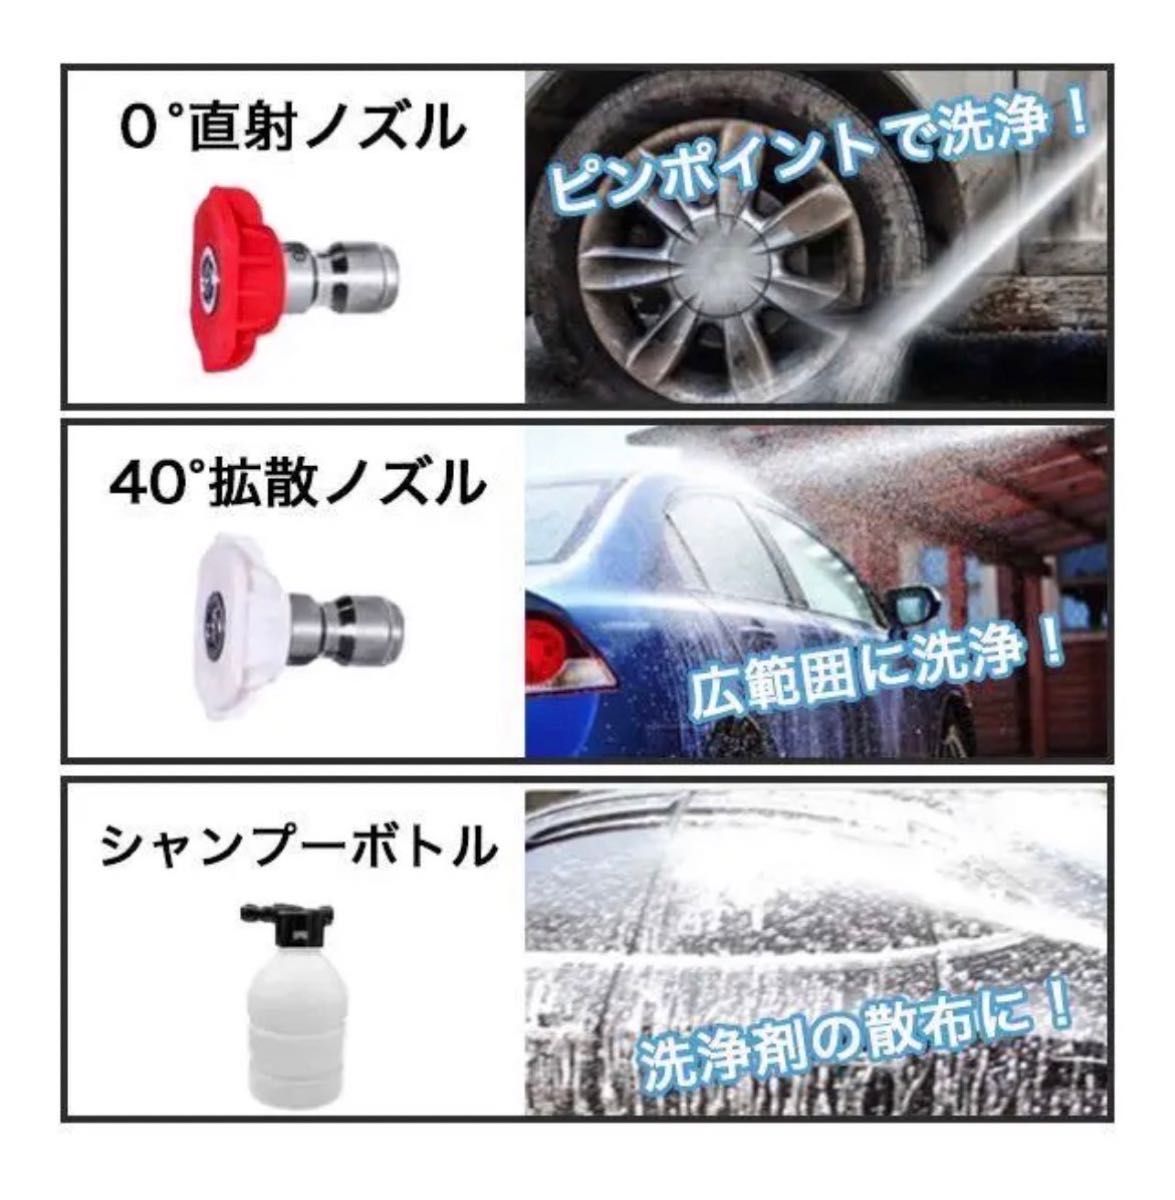 新製品 高圧洗浄機 コードレス 充電式 マキタ makita  洗車  掃除